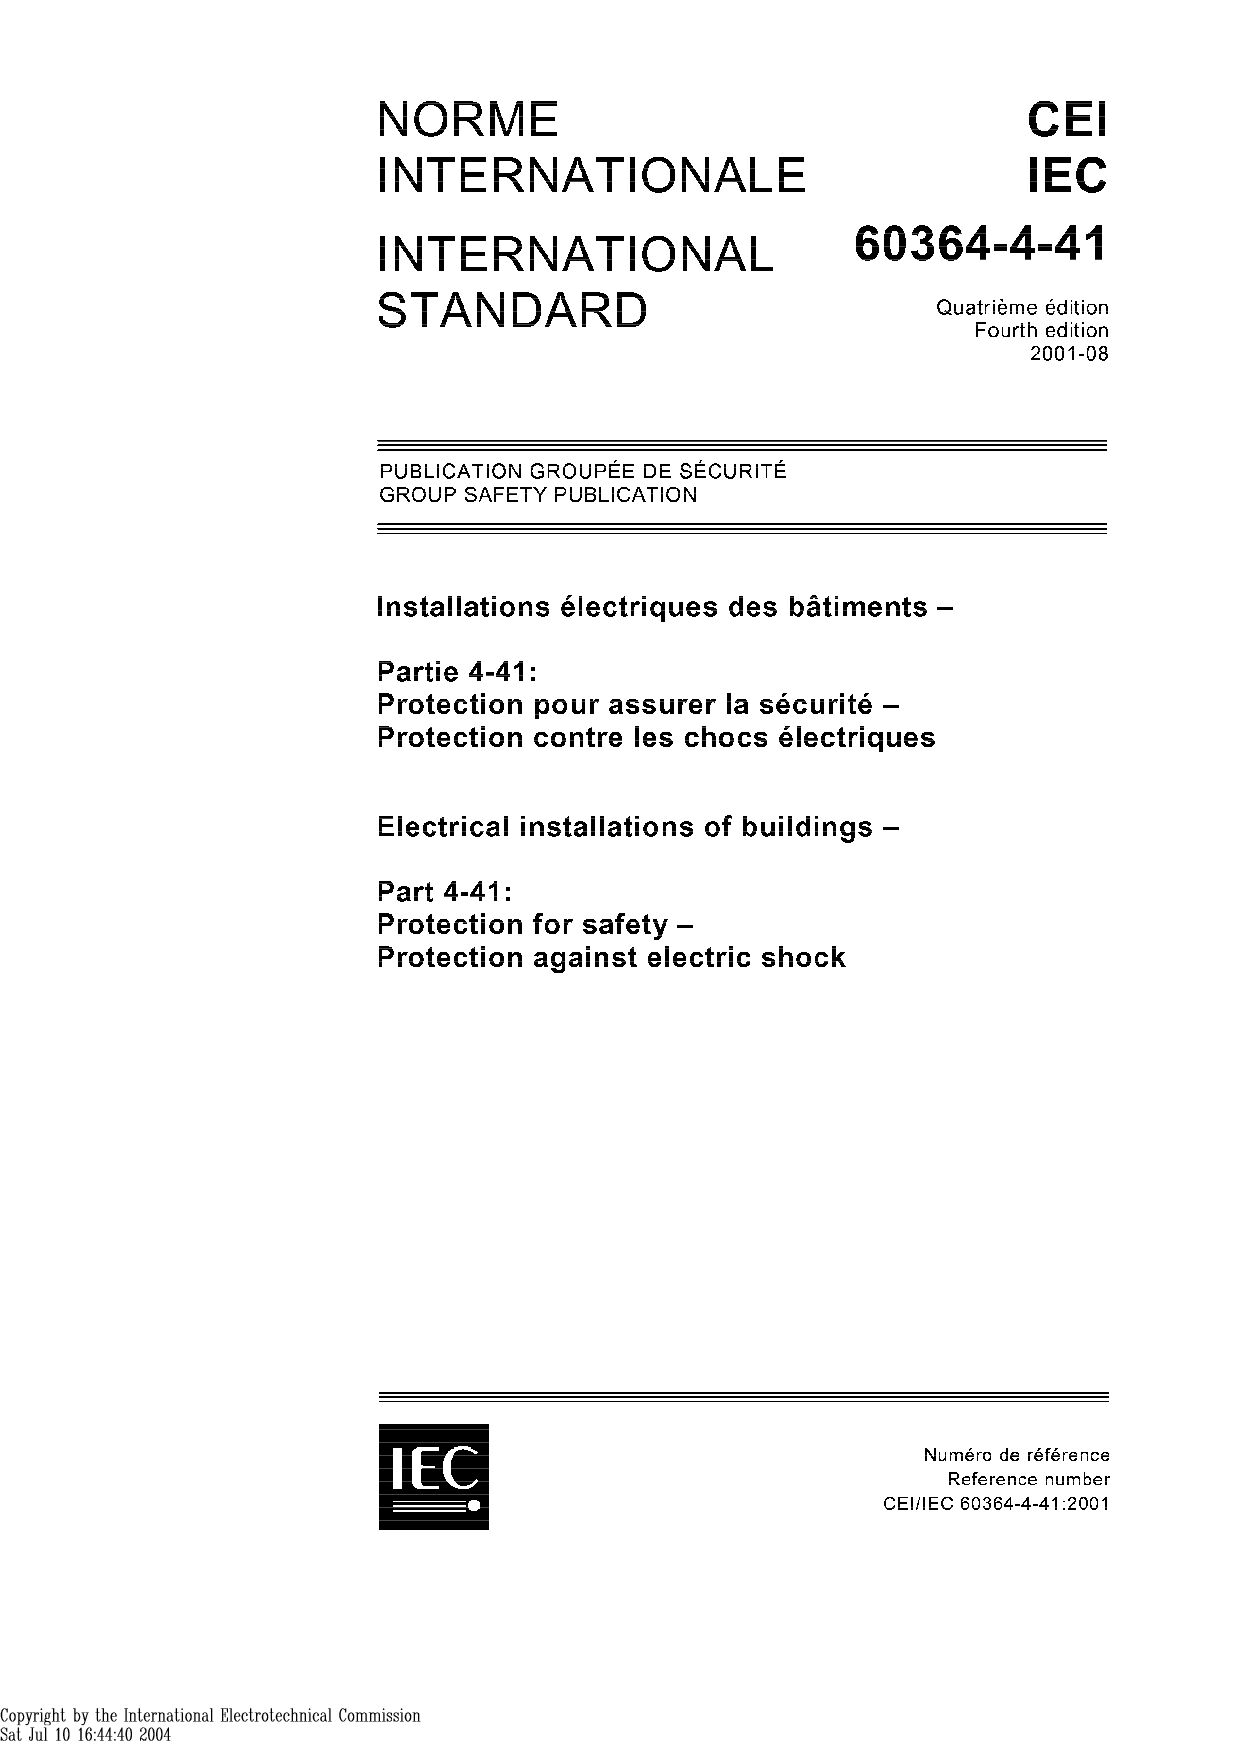 IEC 60364-4-41:2001